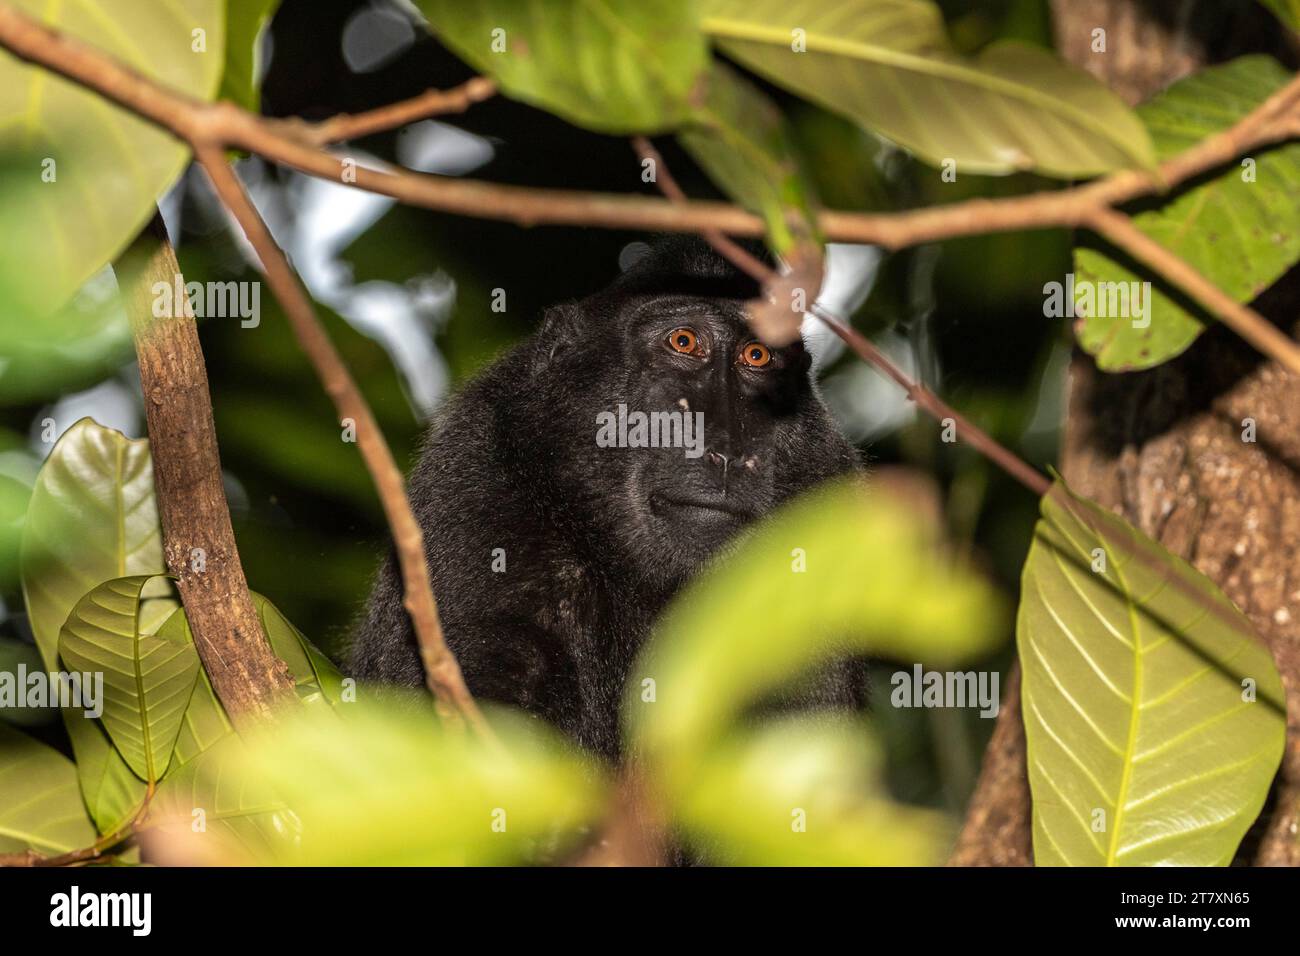 Macaque à crête (Macaca nigra) adulte des Célèbes, se nourrissant dans la réserve naturelle de Tangkoko Batuangus, Sulawesi, Indonésie, Asie du Sud-est Banque D'Images